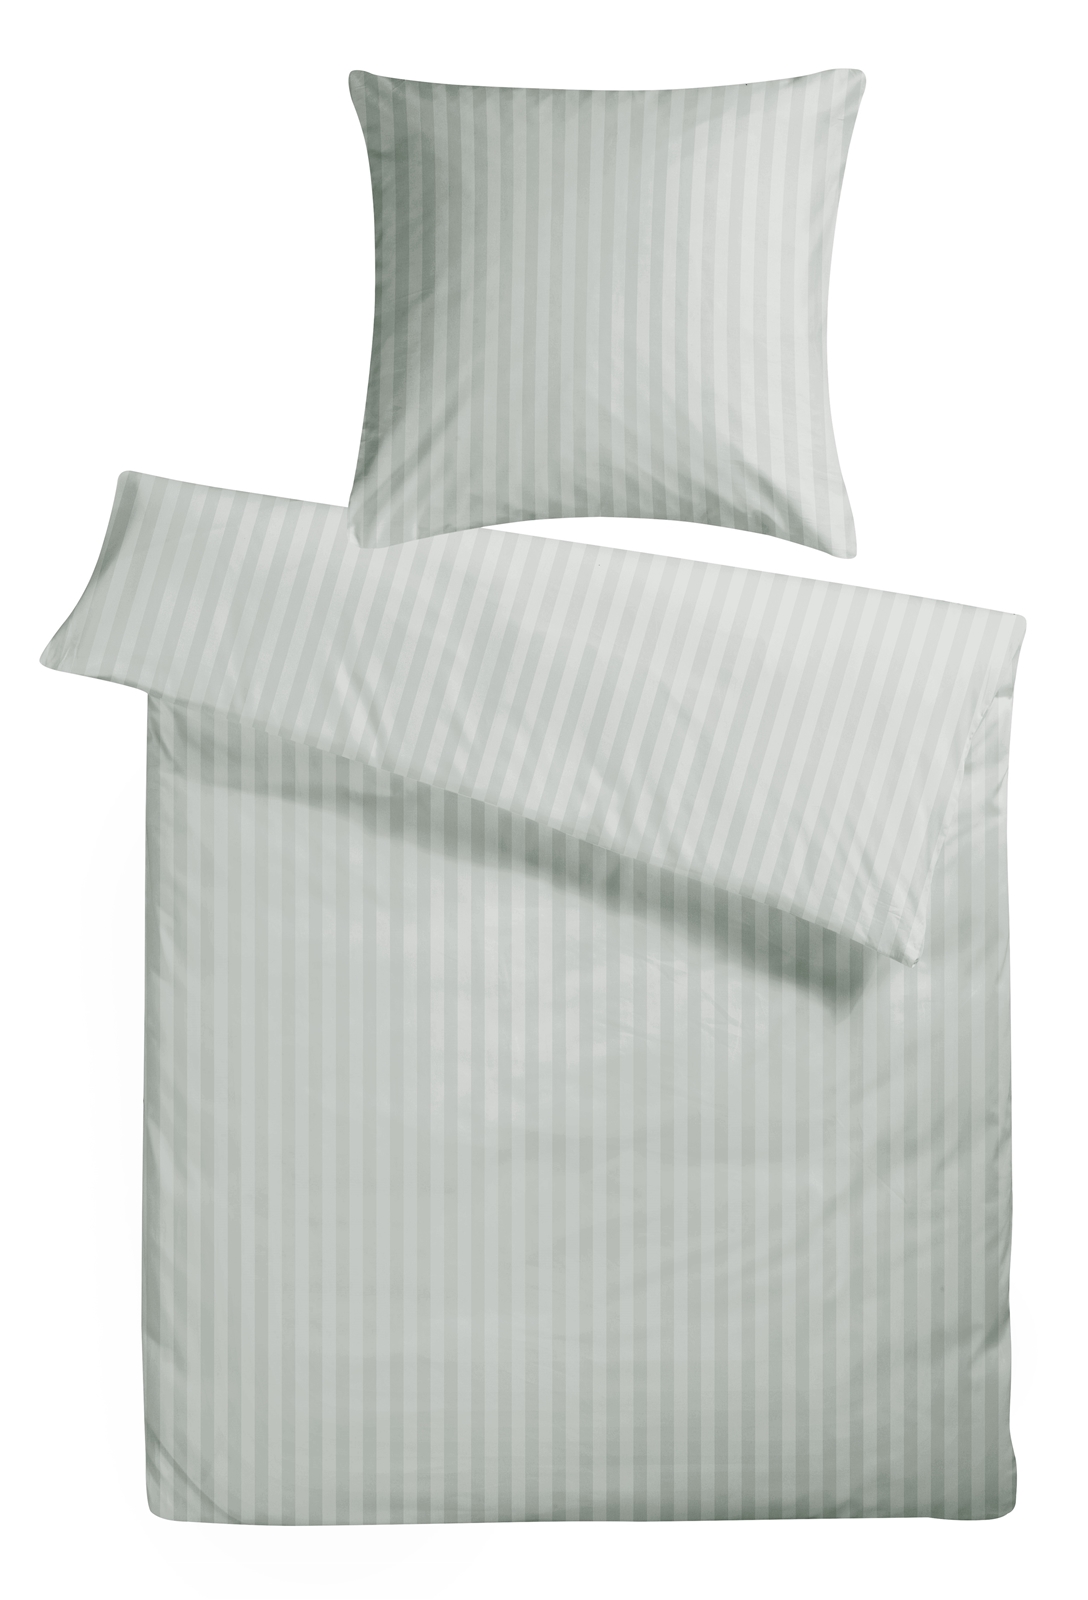 Satin Streifen Bettwäsche aus 100% Baumwolle oder Kissenbezug Weiss Damast